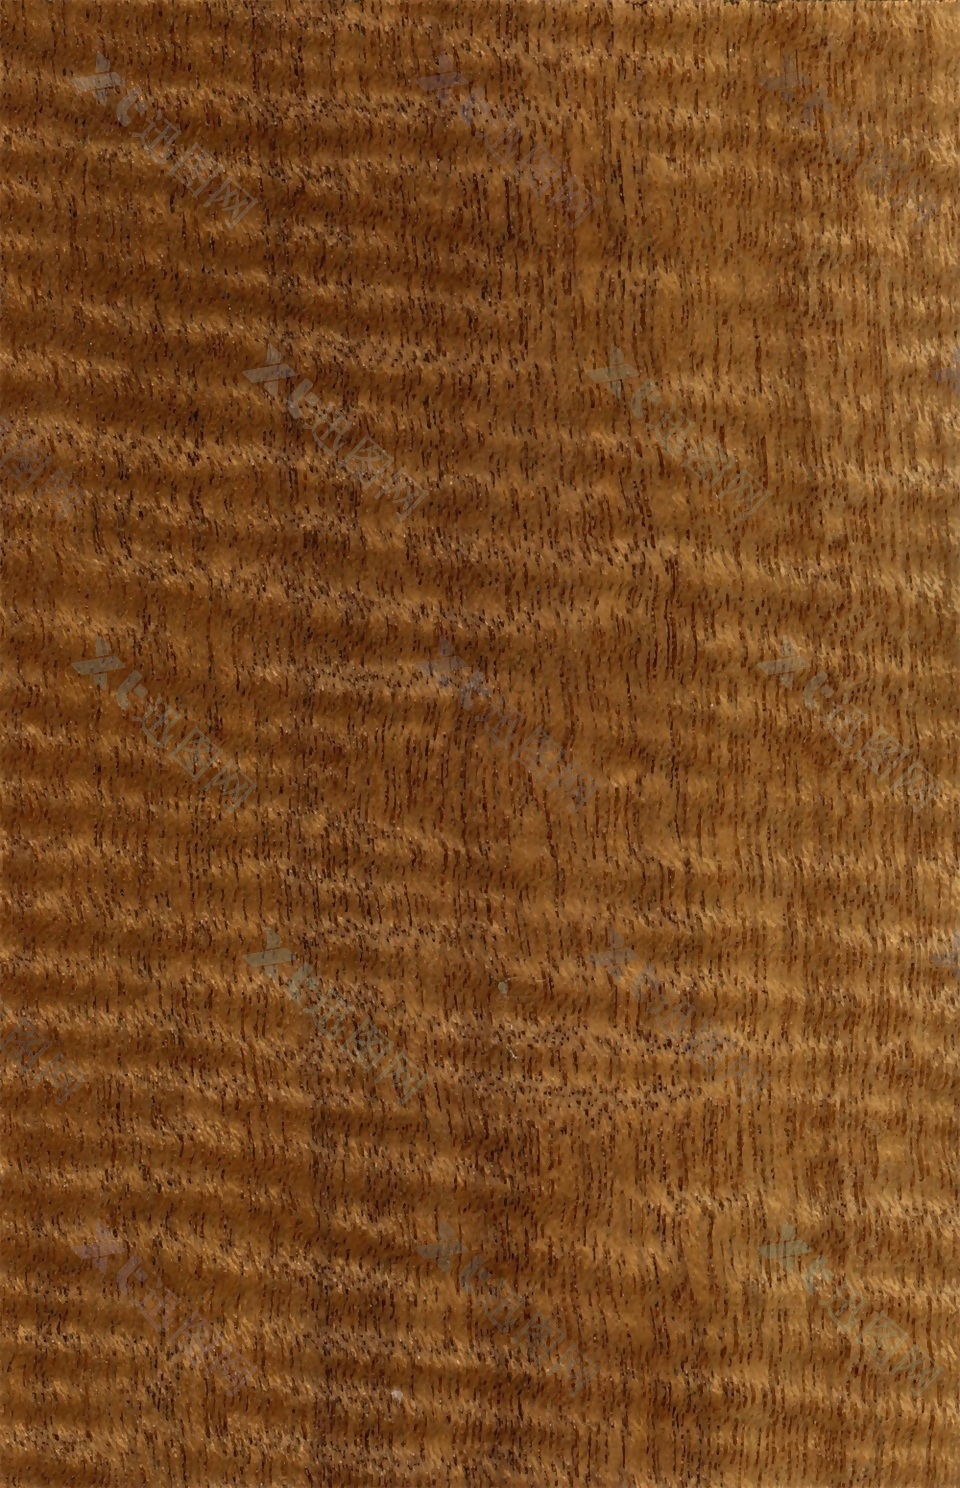 粗犷木纹材质贴图高清质感肌理照